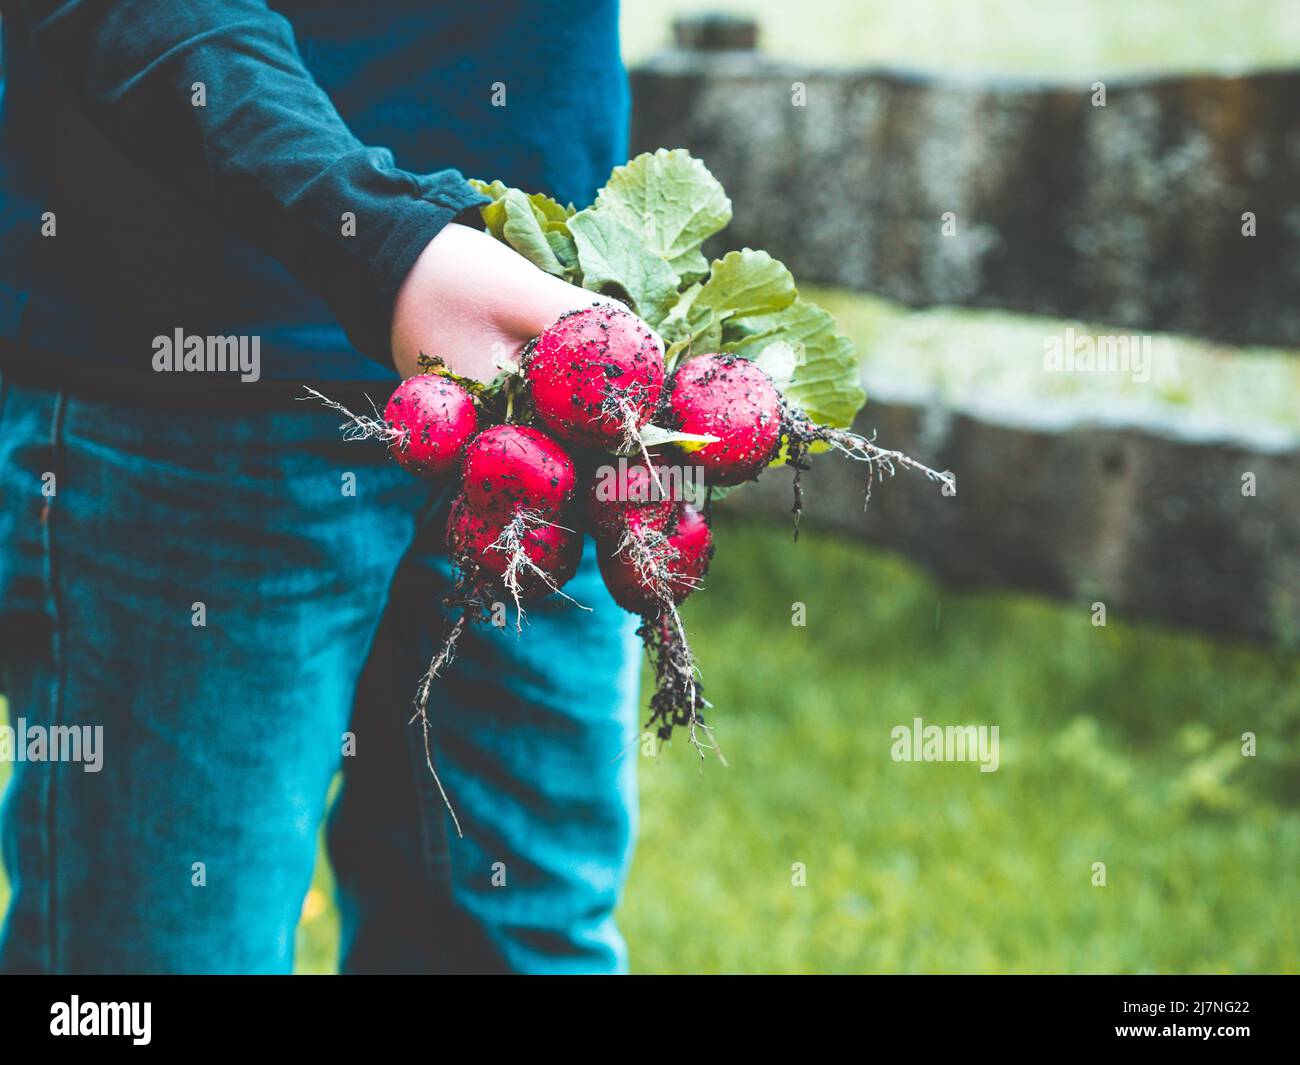 les agriculteurs tiennent un lot de radis entre les mains après avoir récolté des plantes maison, clôture de jardin à l'arrière-plan Banque D'Images